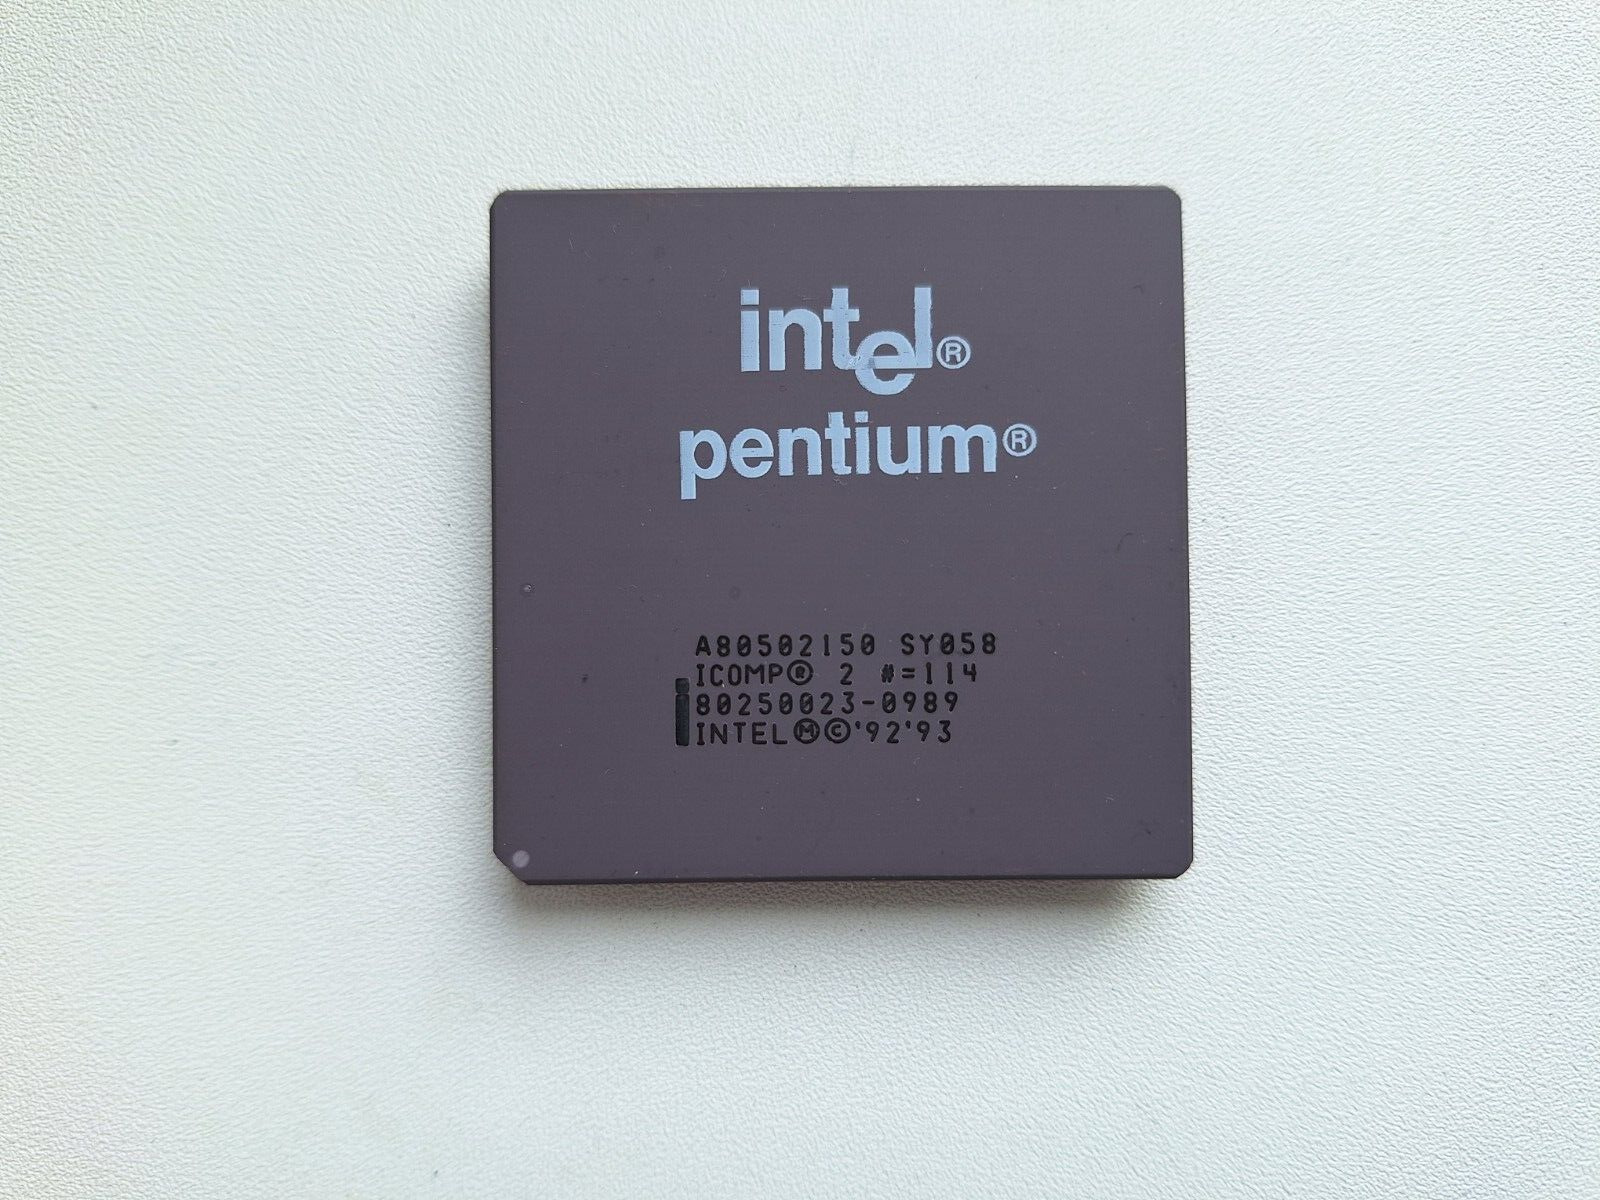 Intel Pentium 150 A80502150 SY058 very rare mobile Pentium 150 vintage CPU GOLD